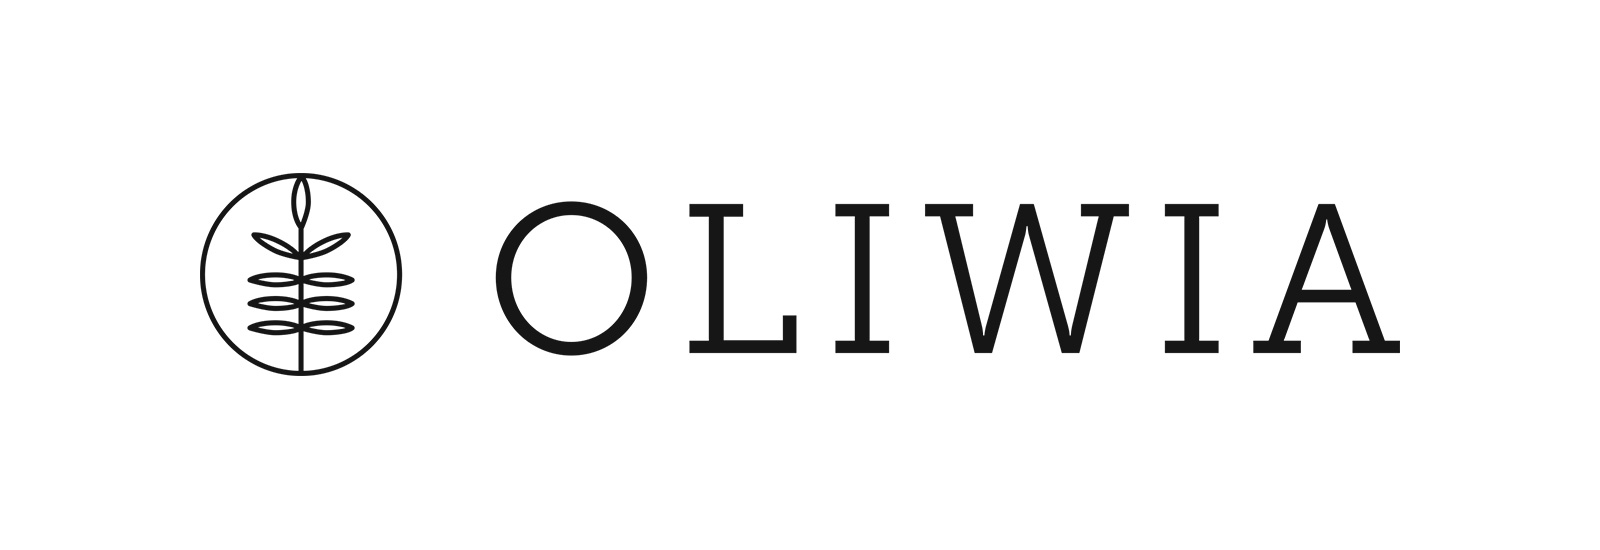 Studio Urody Oliwia Izabela Haczykowska   RAZEM od  25 lat          , Łowicz, logo-oliwia-poziom